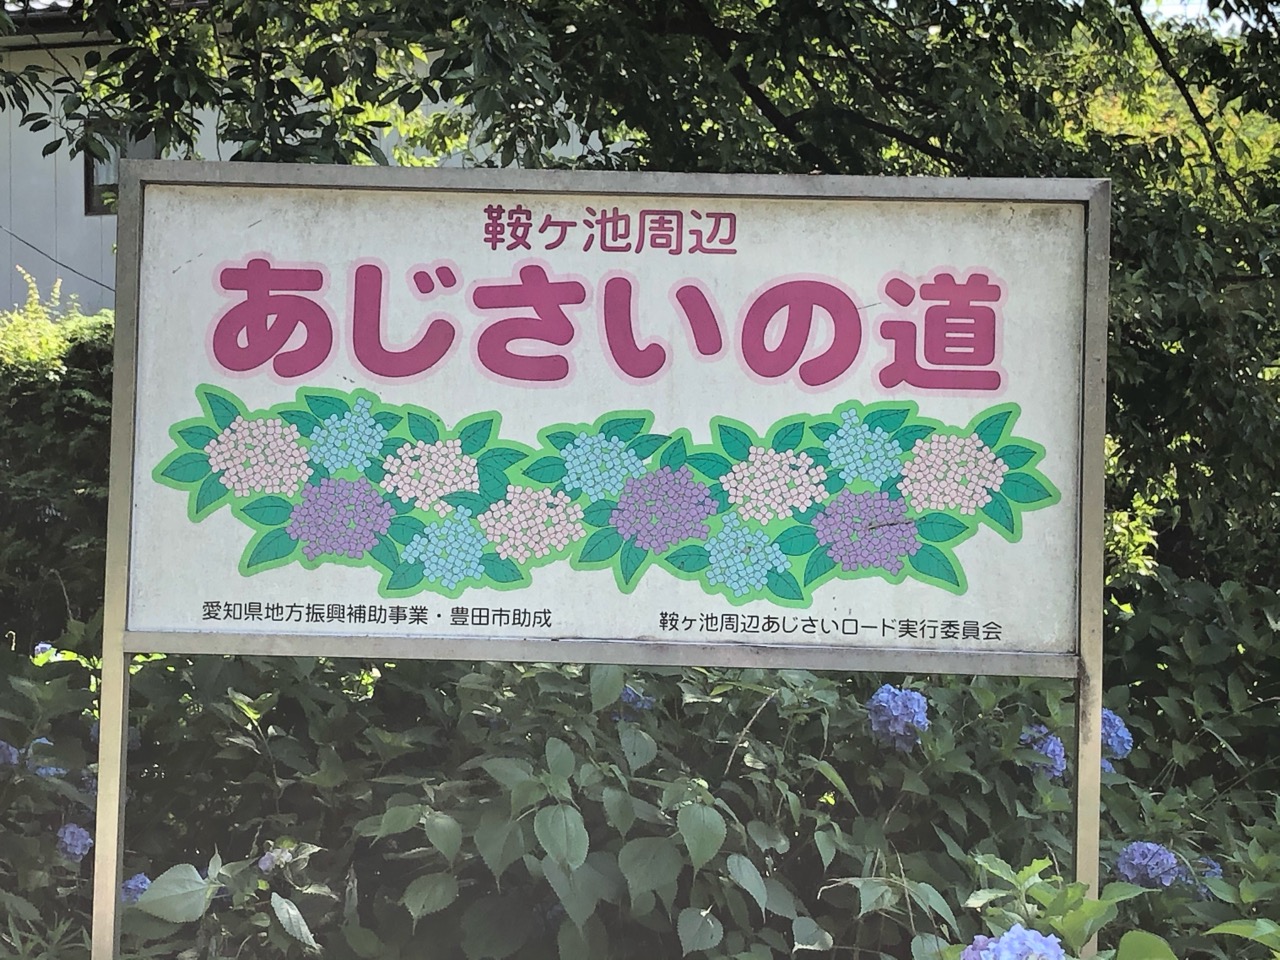 豊田市 今年の開花状況は 約11 000株の紫陽花が見られる鞍ケ池 あじさいの道 今年も咲き始めています 号外net 豊田市